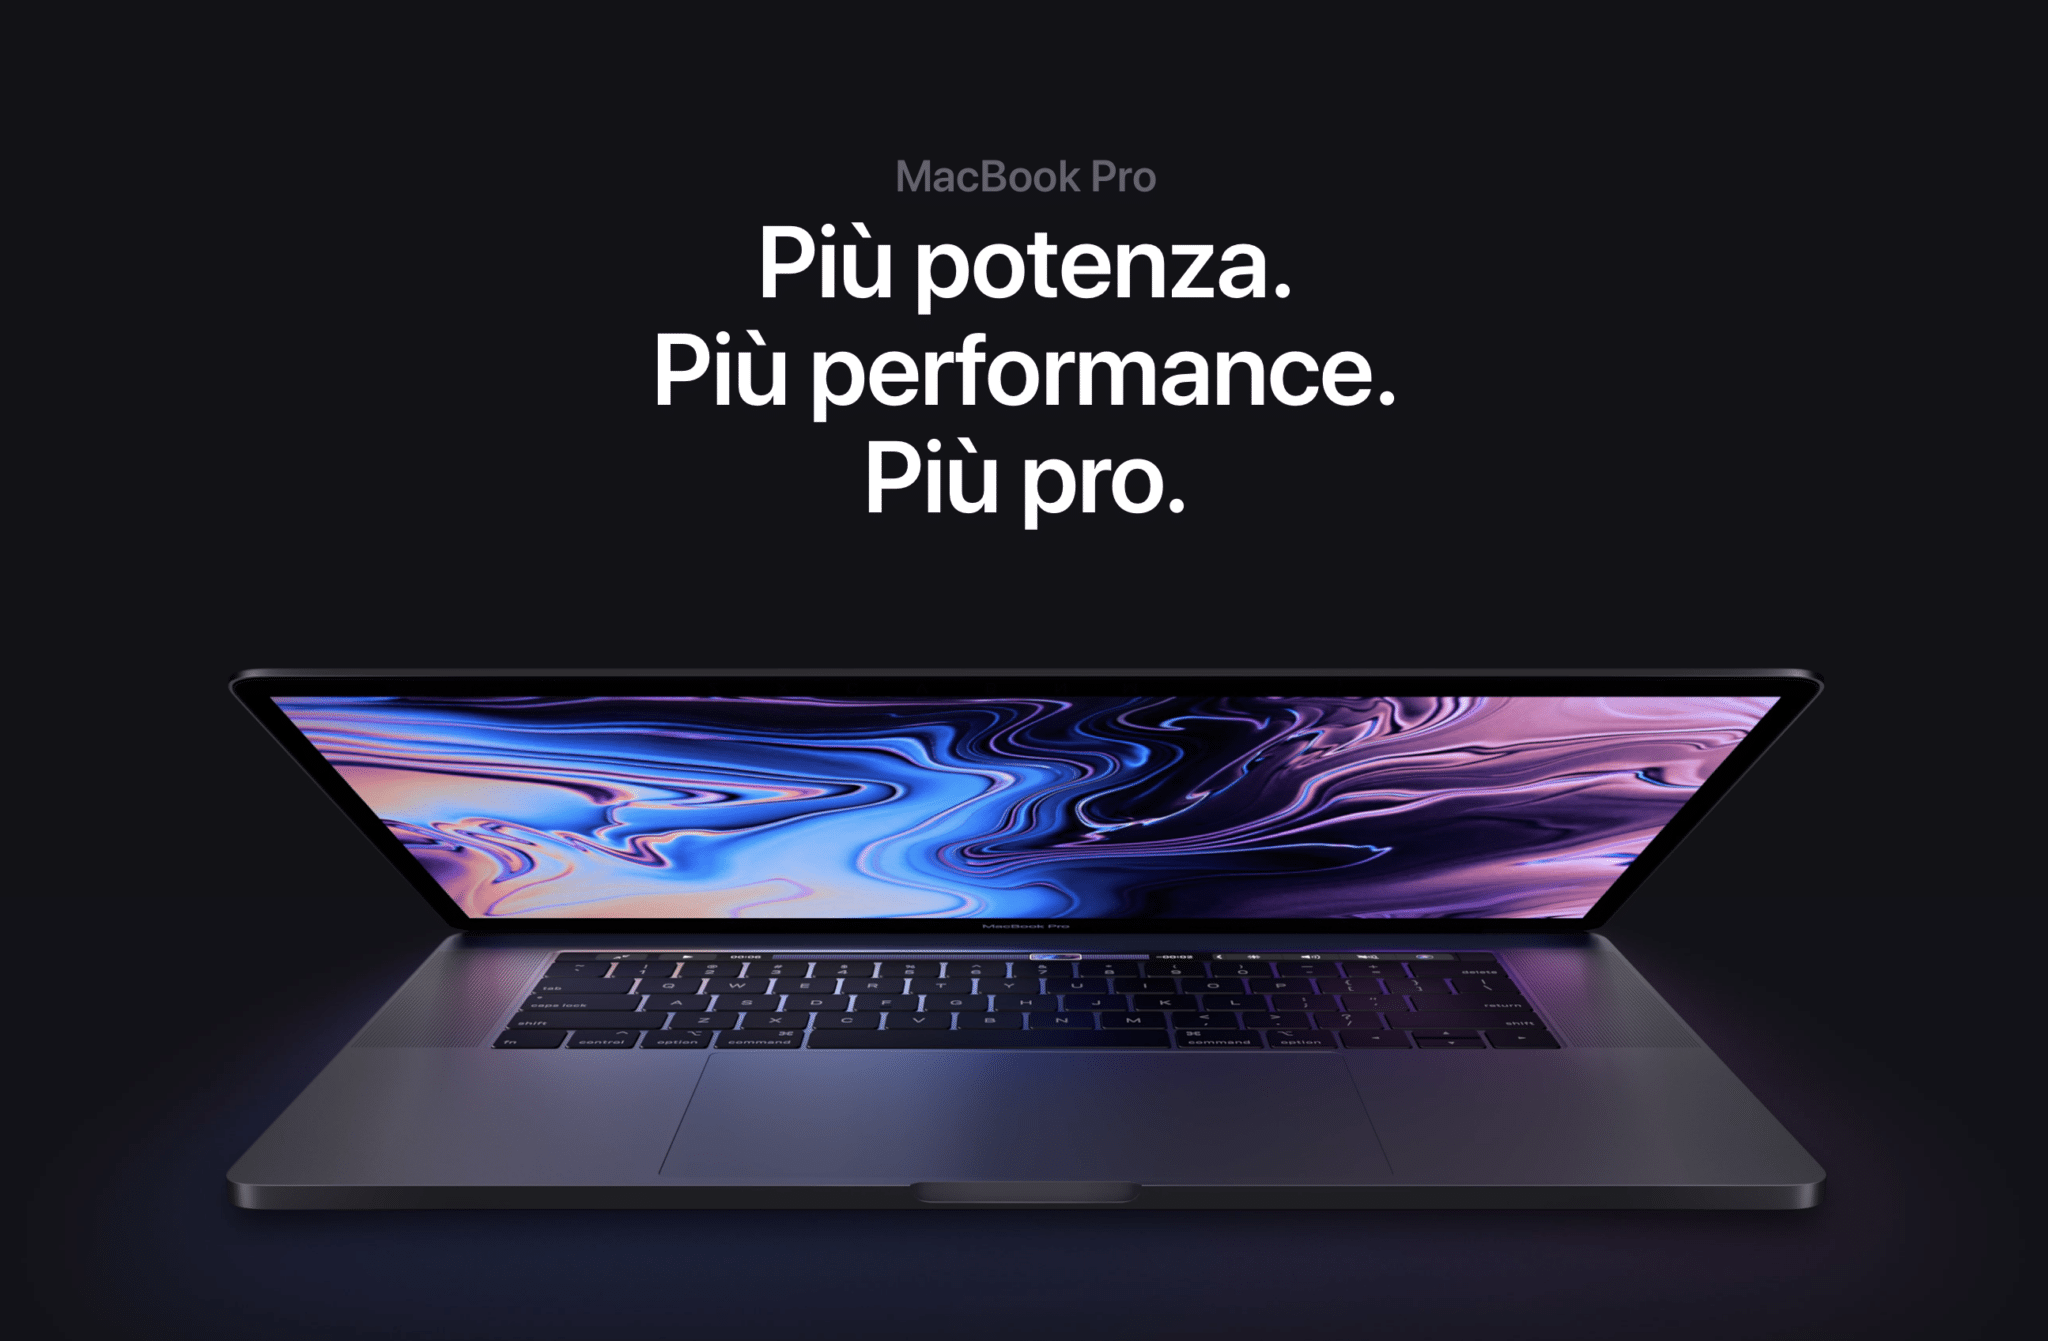 Rilasciati, Nuovi, MacBook Pro, Macbook Air, 2019